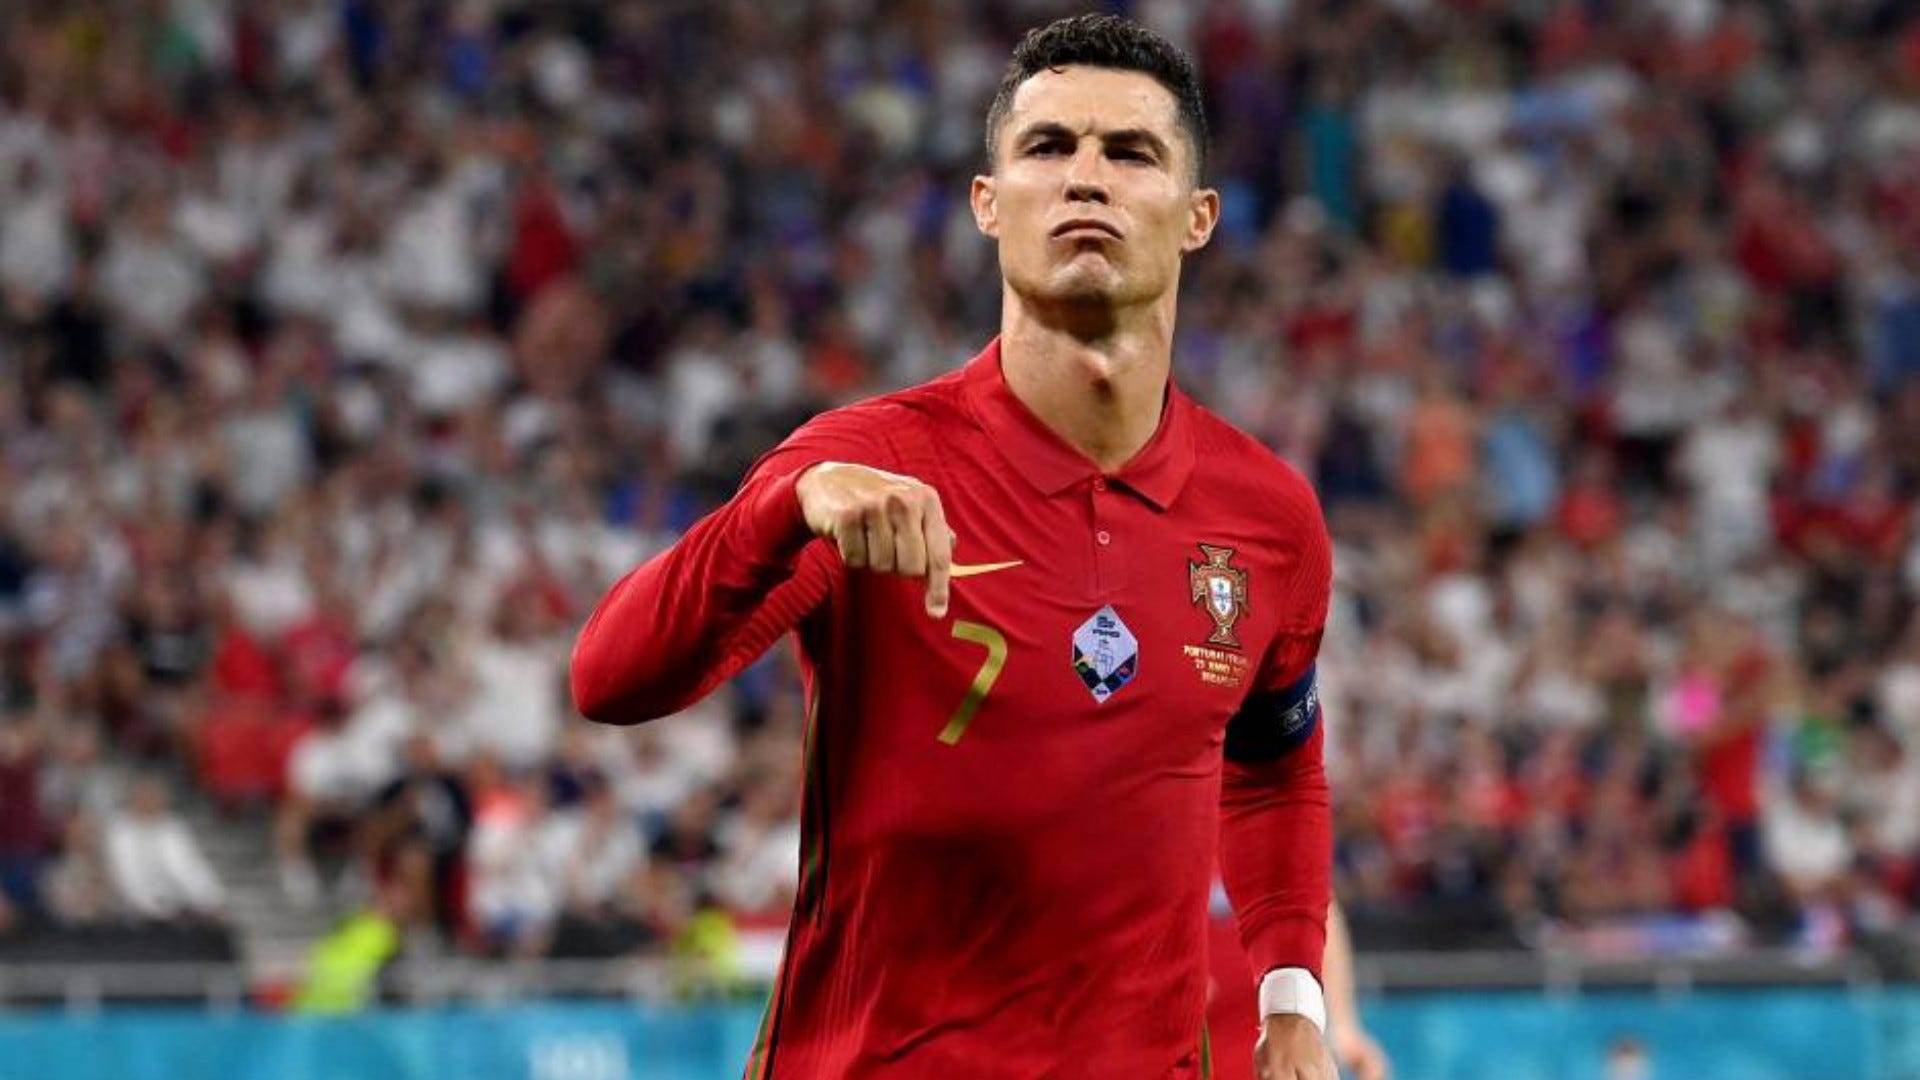 Điểm danh những bàn thắng đẳng cấp mà Cristiano Ronaldo ghi được cho ĐT Bồ Đào Nha sẽ giúp bạn ngất ngây trước khả năng chơi bóng của siêu sao này. Xem ngay hình ảnh liên quan để cảm nhận tình yêu bóng đá của Ronaldo.